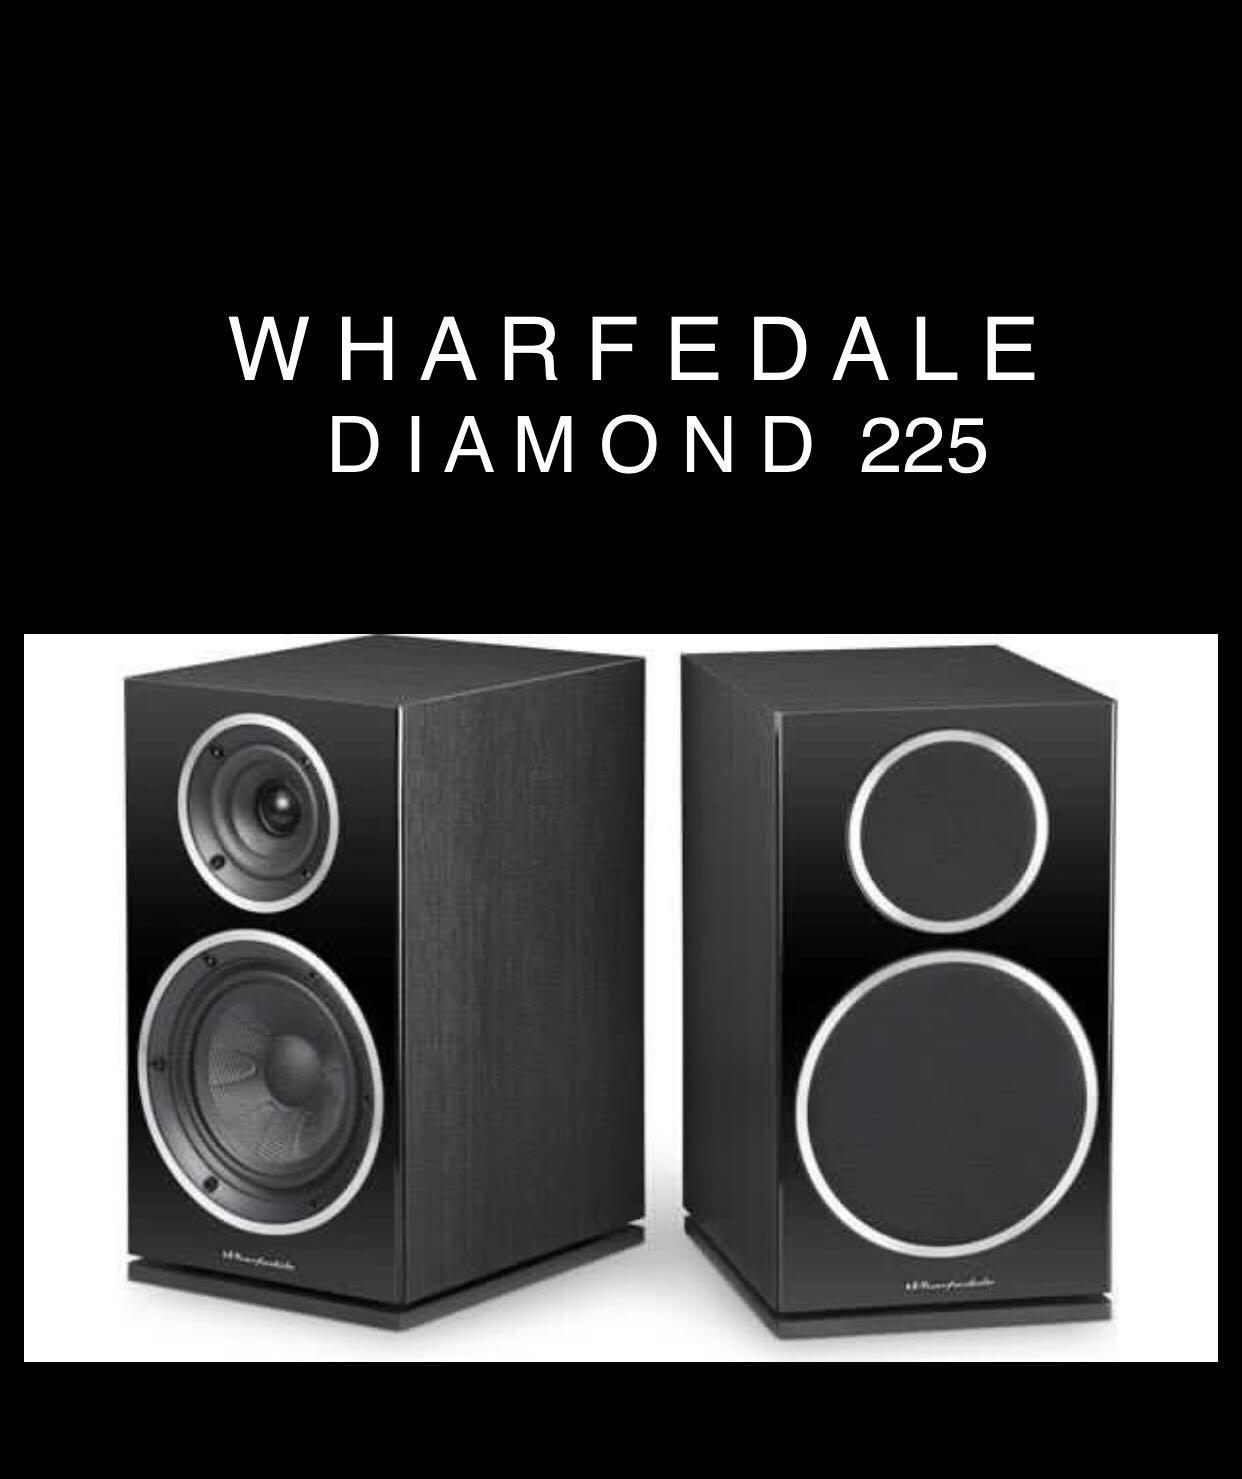 WHARFEDALE DIAMOND 225 (Black) 3 YEAR WARRANTY, BOOKSHELF